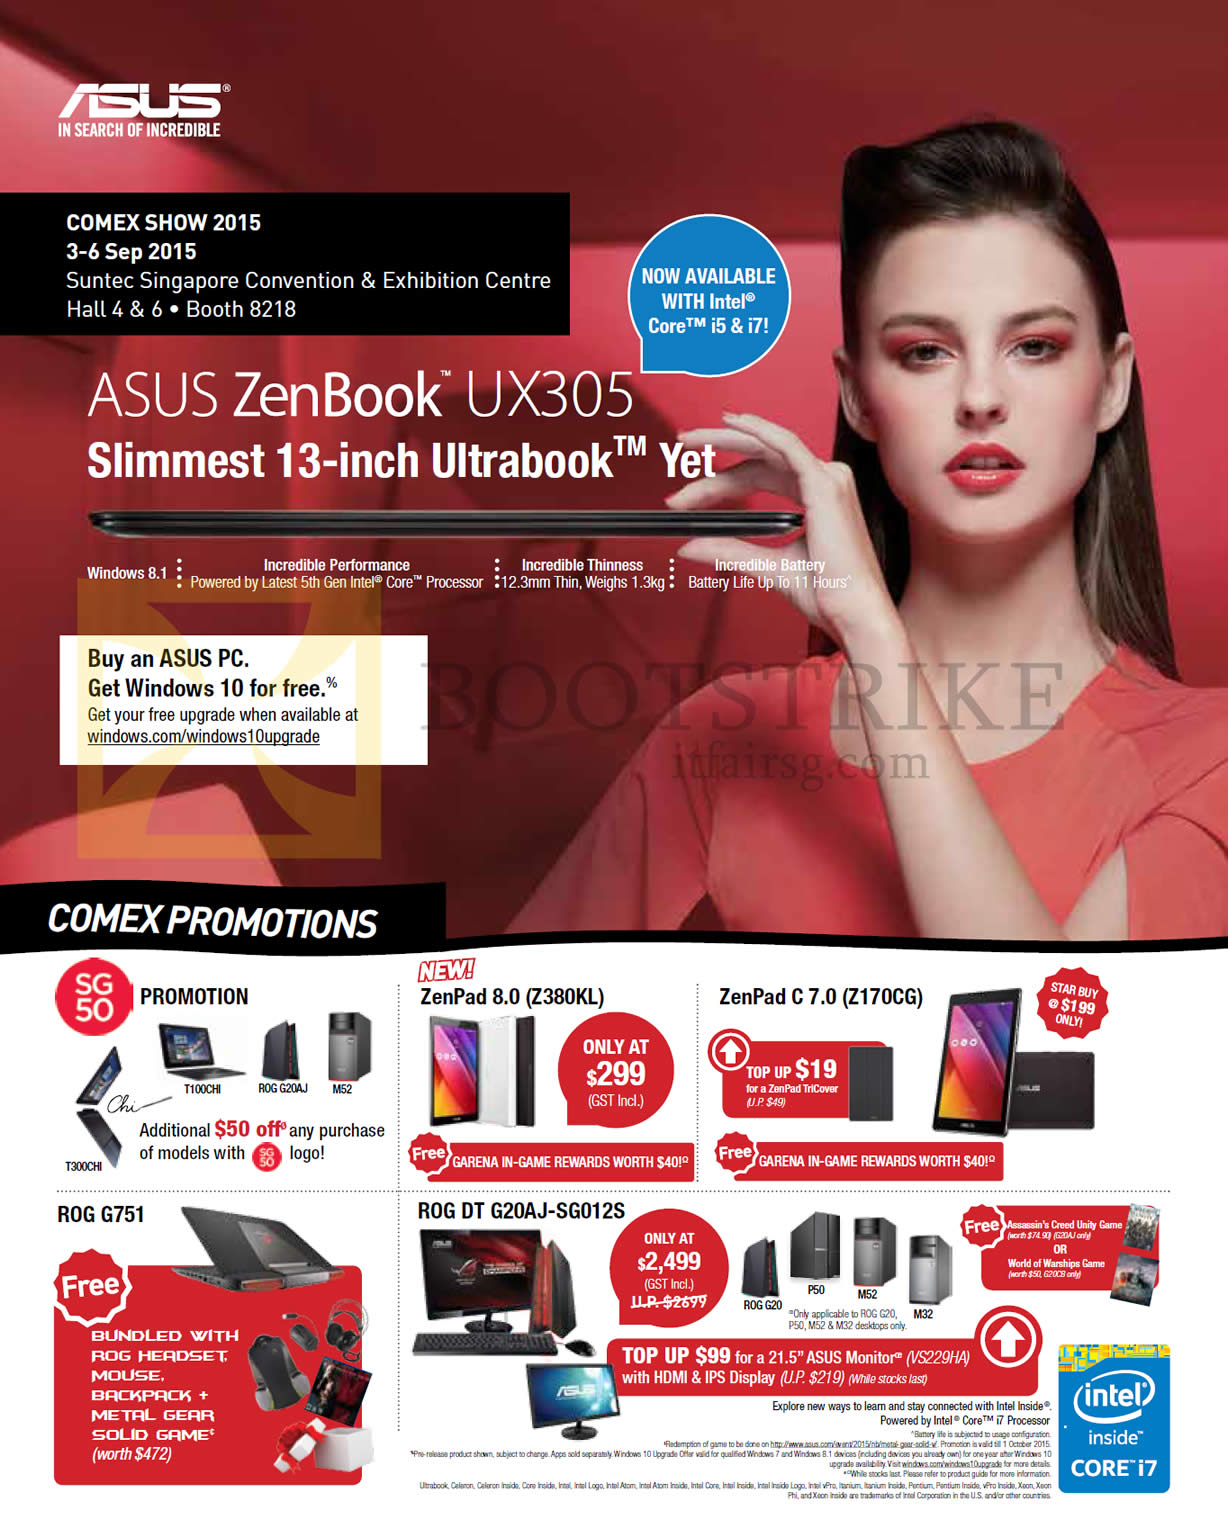 COMEX 2015 price list image brochure of ASUS Notebooks Featured Buys ZenBook UX305, ROG, ZenPad 8.0 Z380KL, ZenPad C